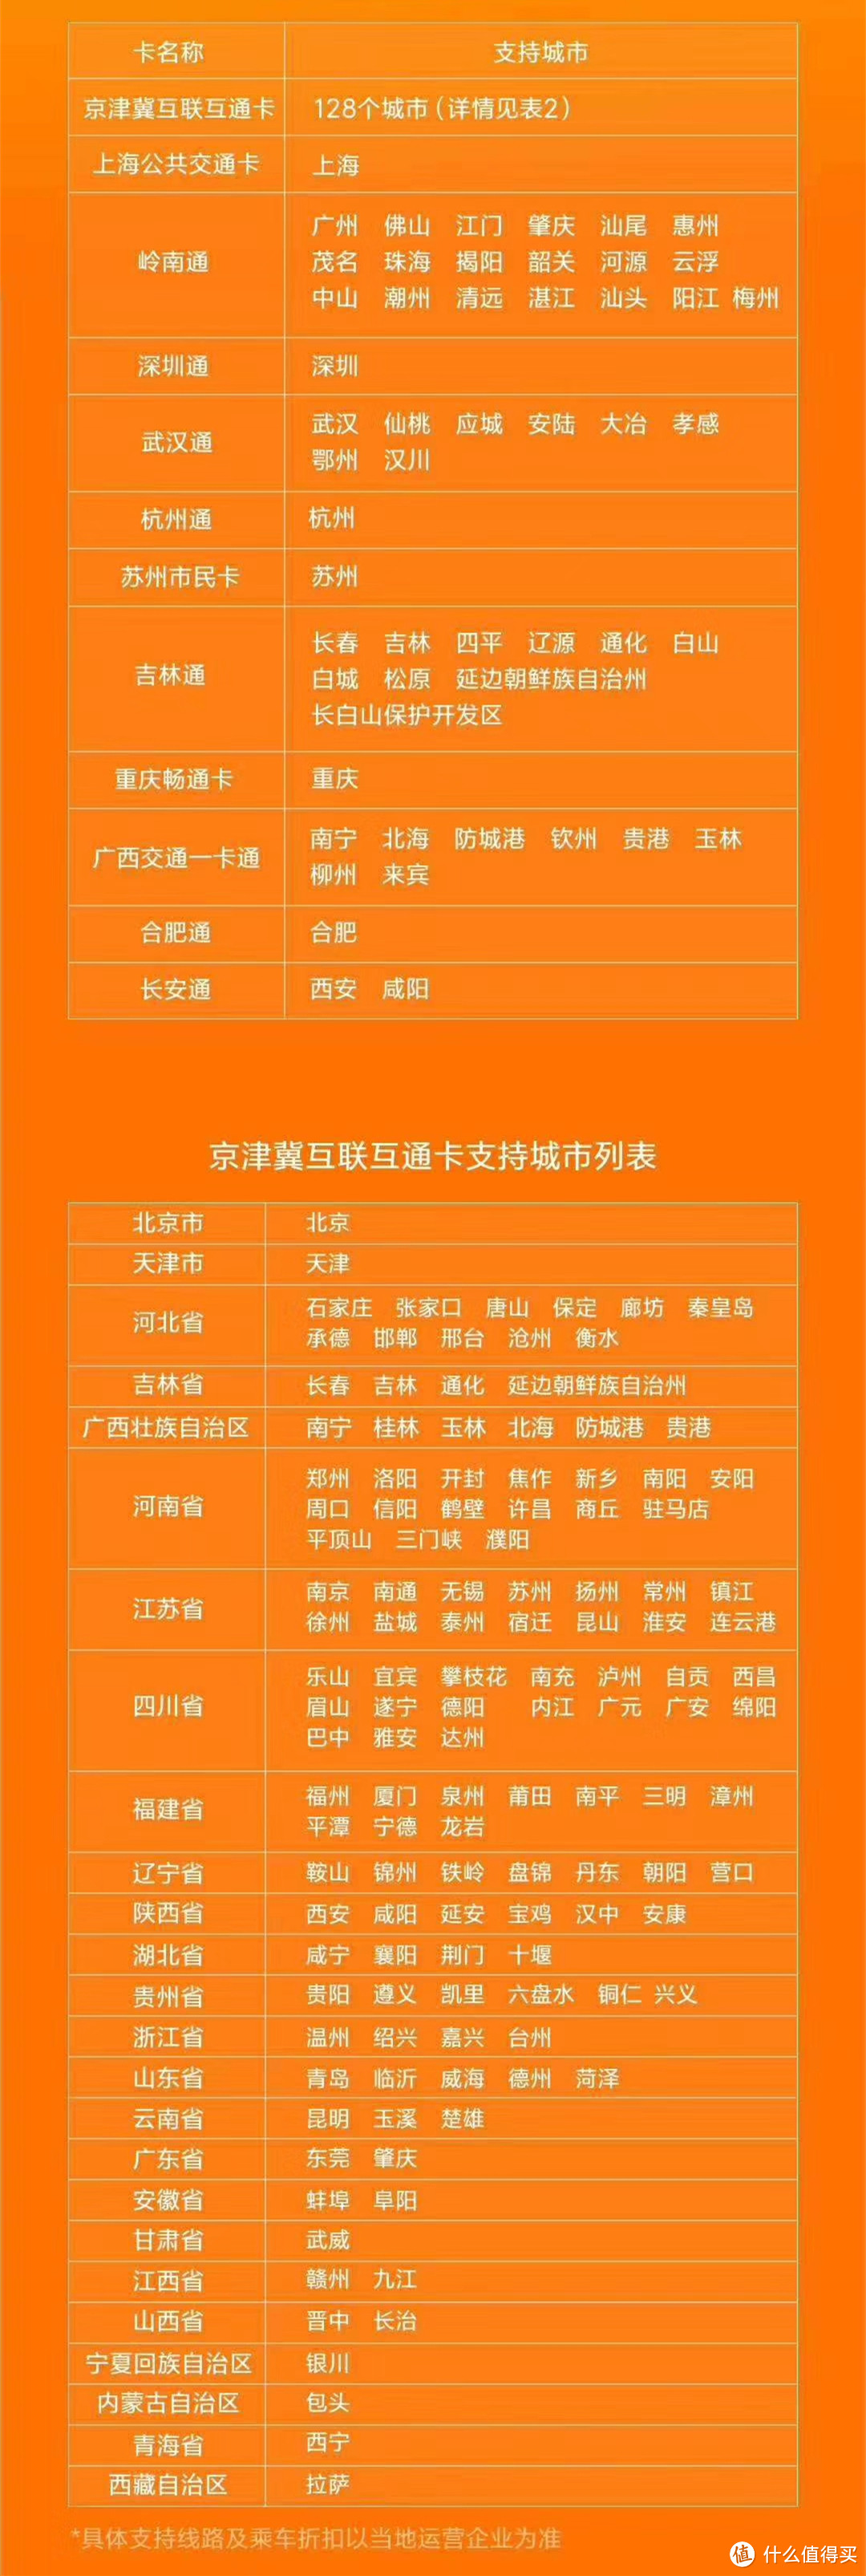 京津冀城市列表